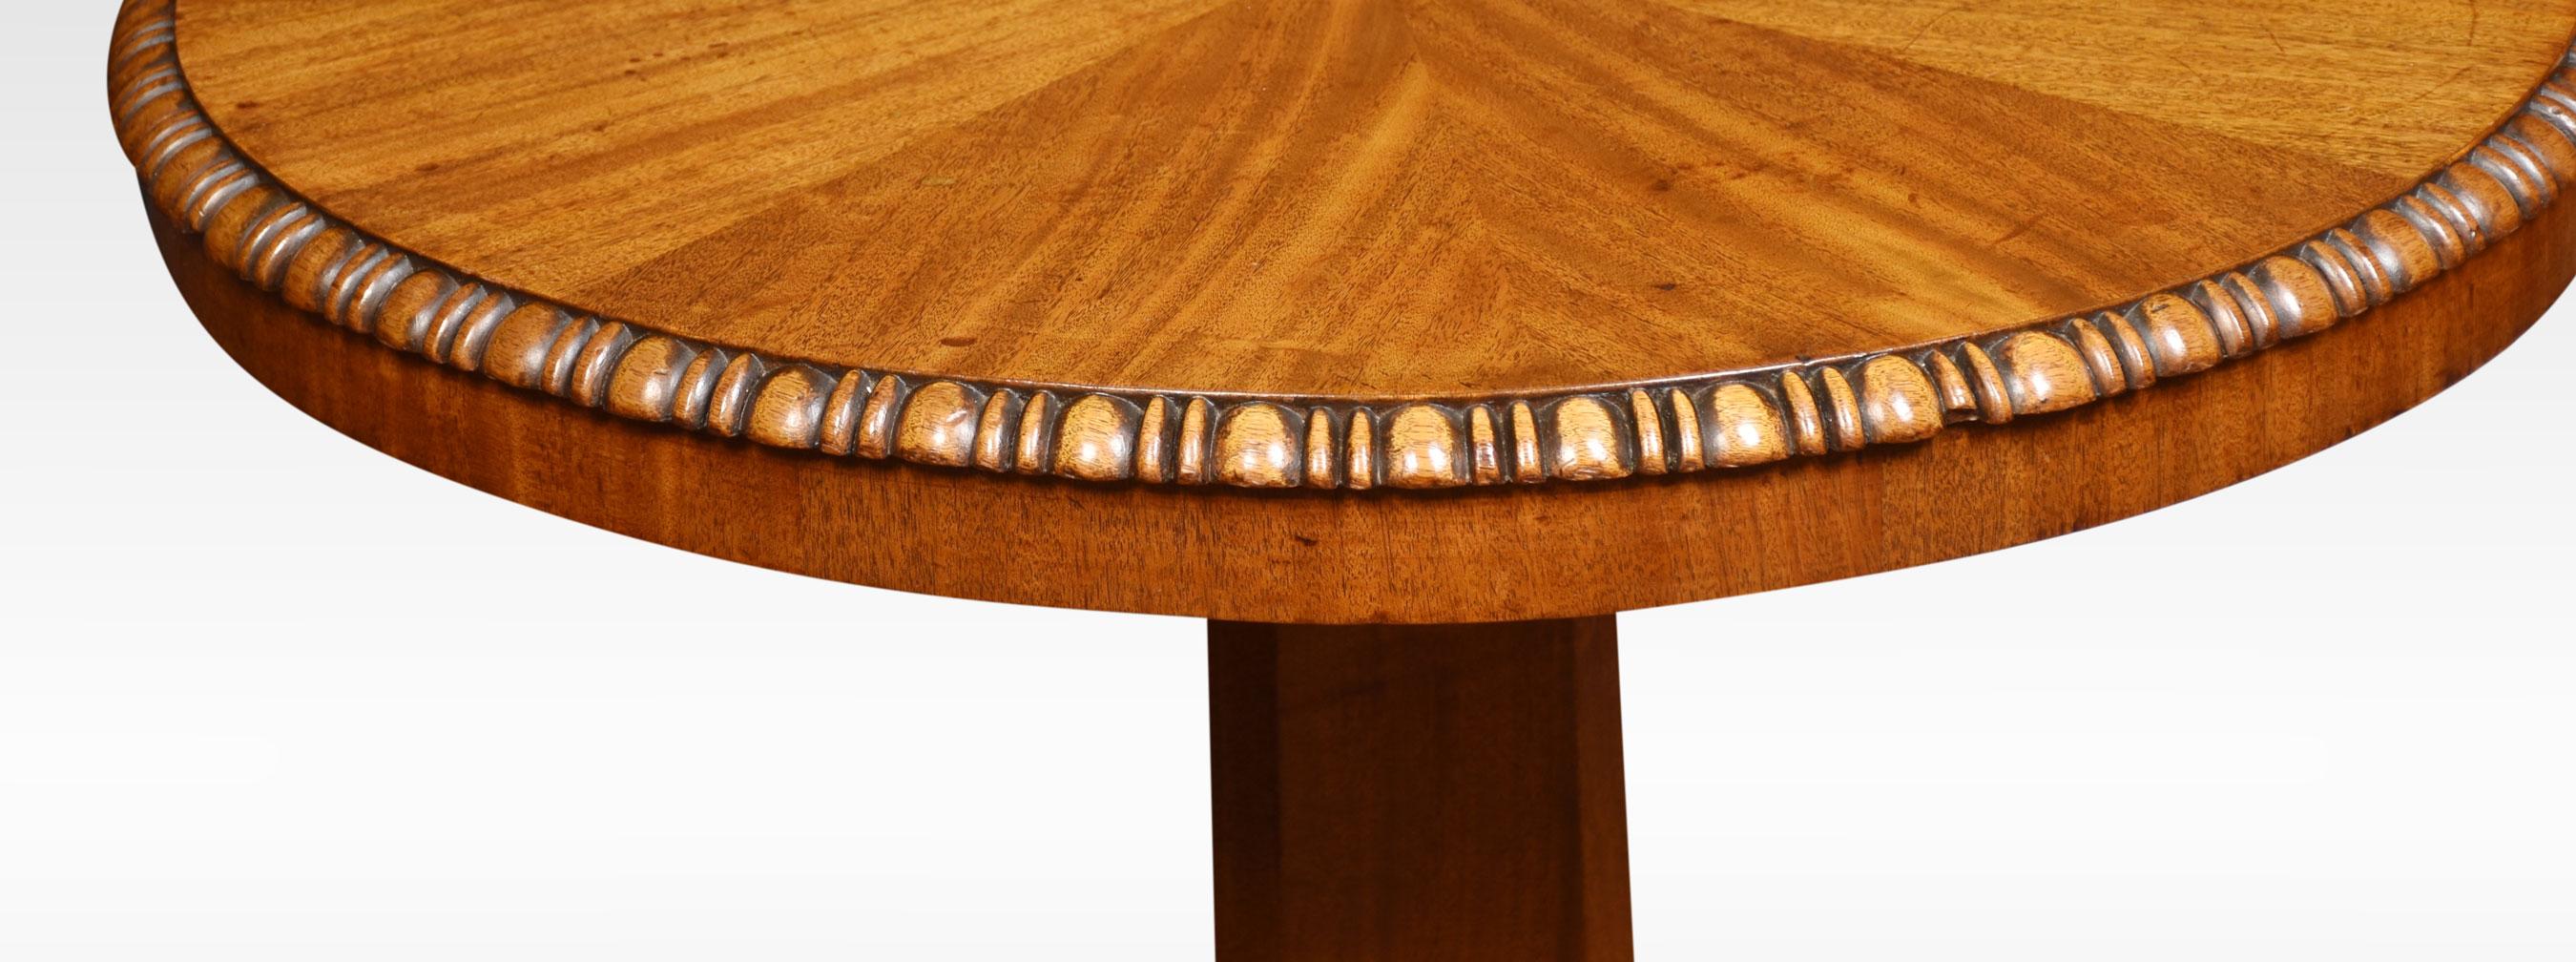 British Mahogany Pedestal Table